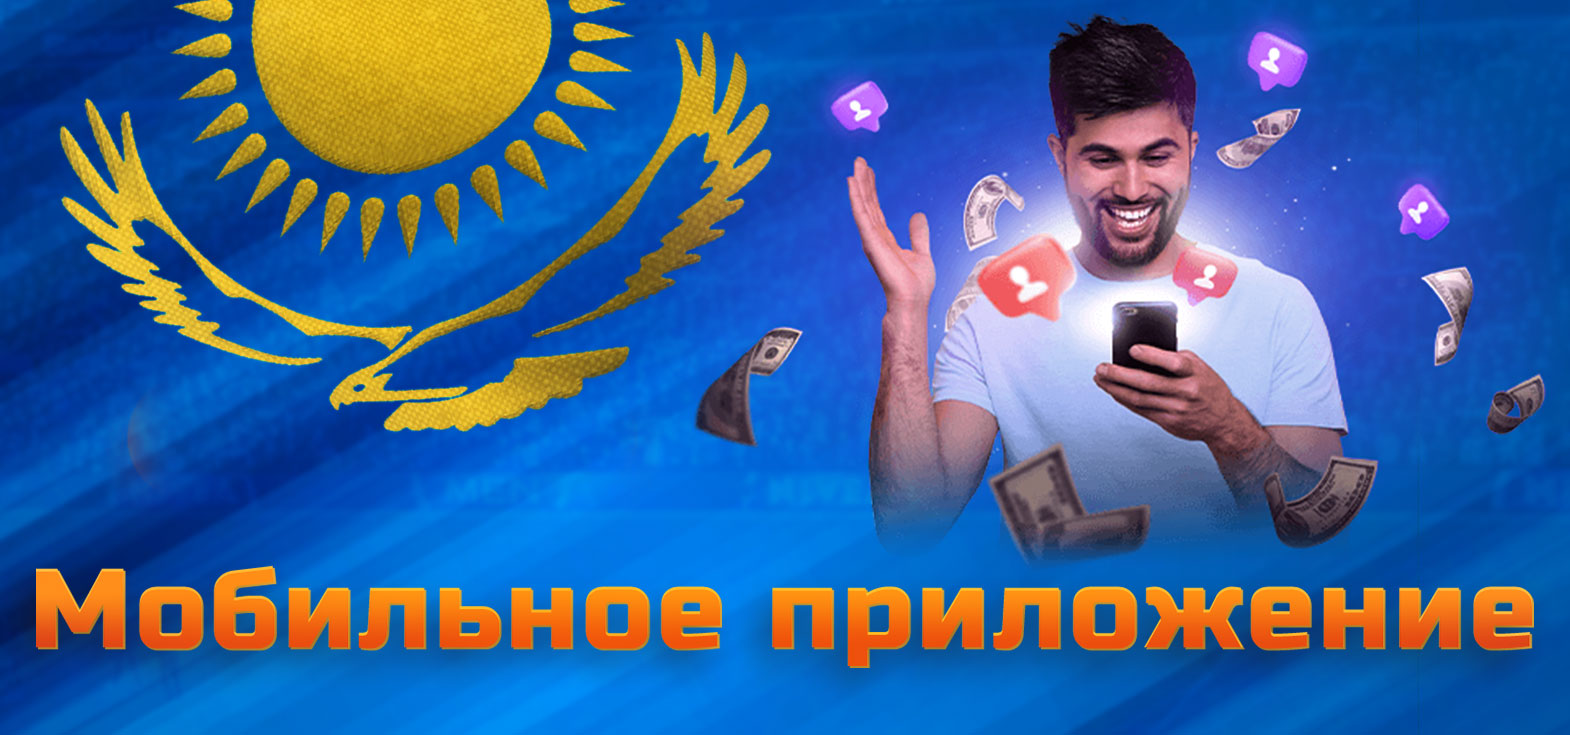 Всё о мобильном приложении Mostbet в Казахстане.